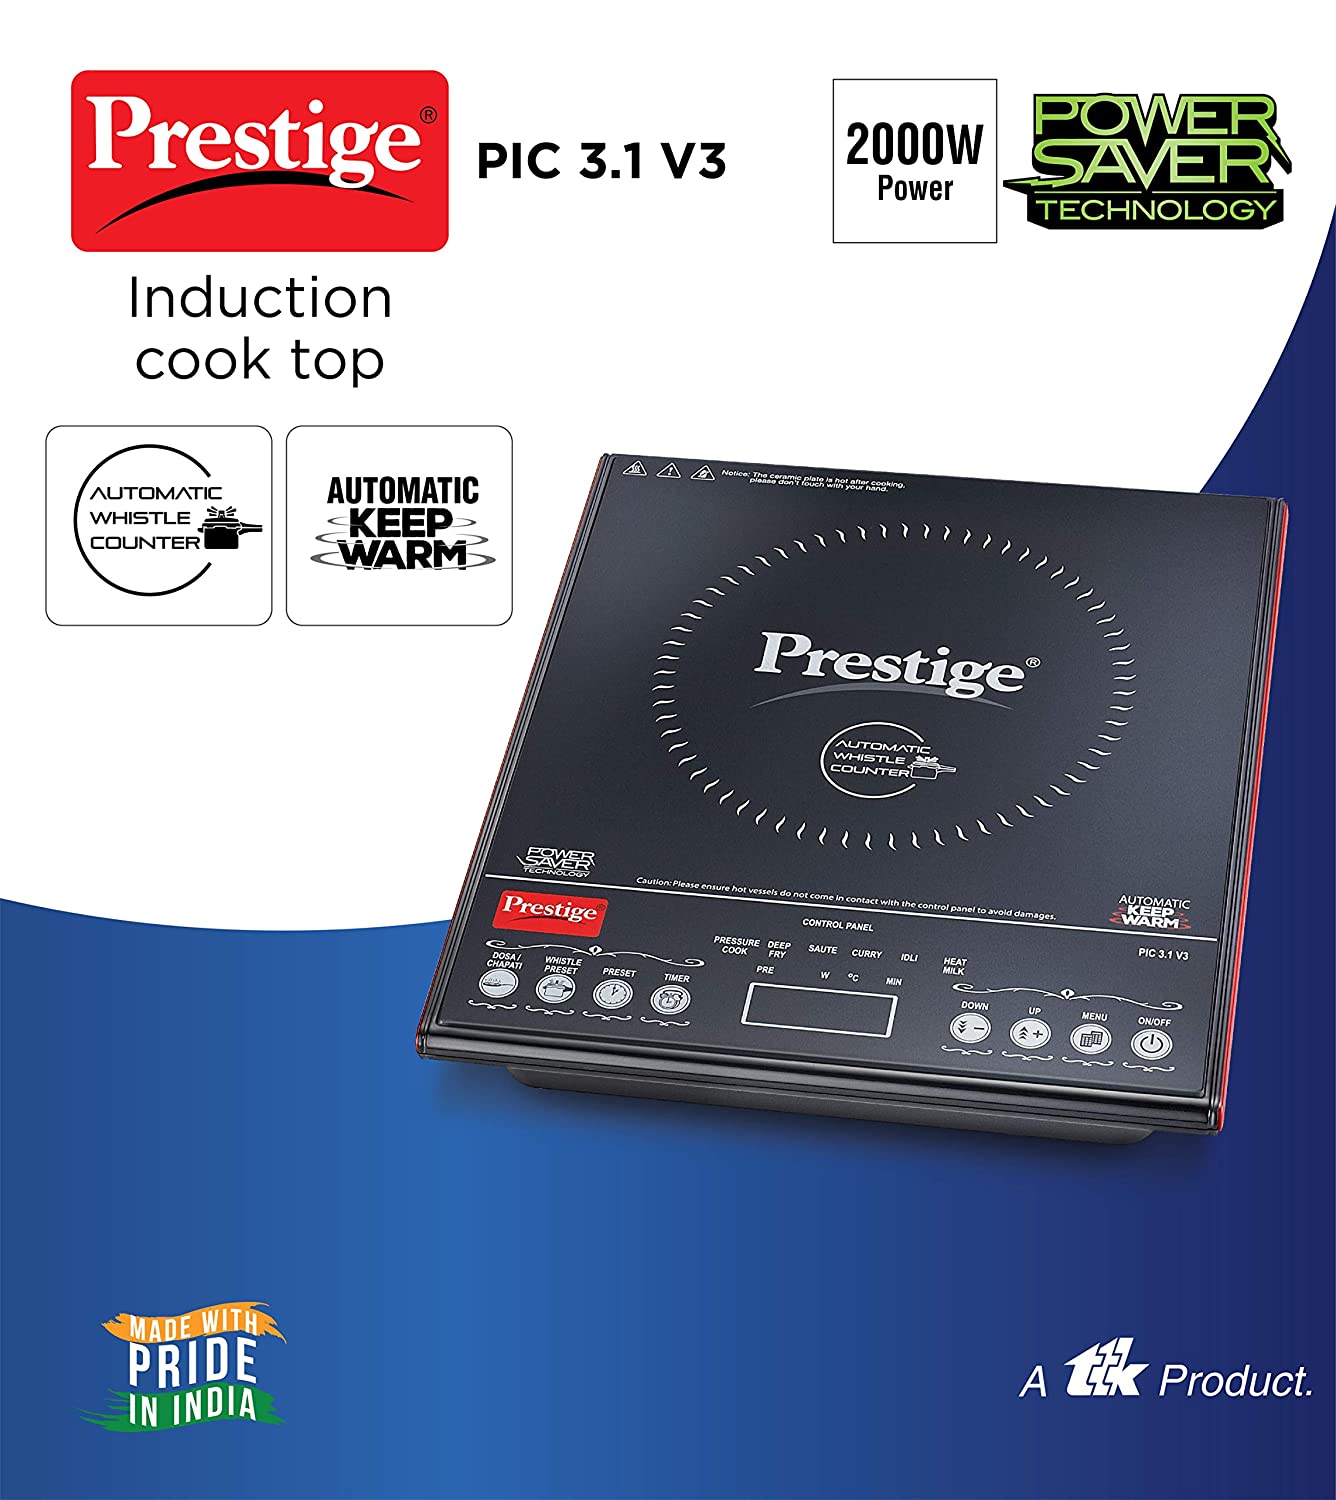 प्रेस्टीज PIC 3.1 V3 2000-वाट इंडक्शन कुकटॉप टच पैनल के साथ